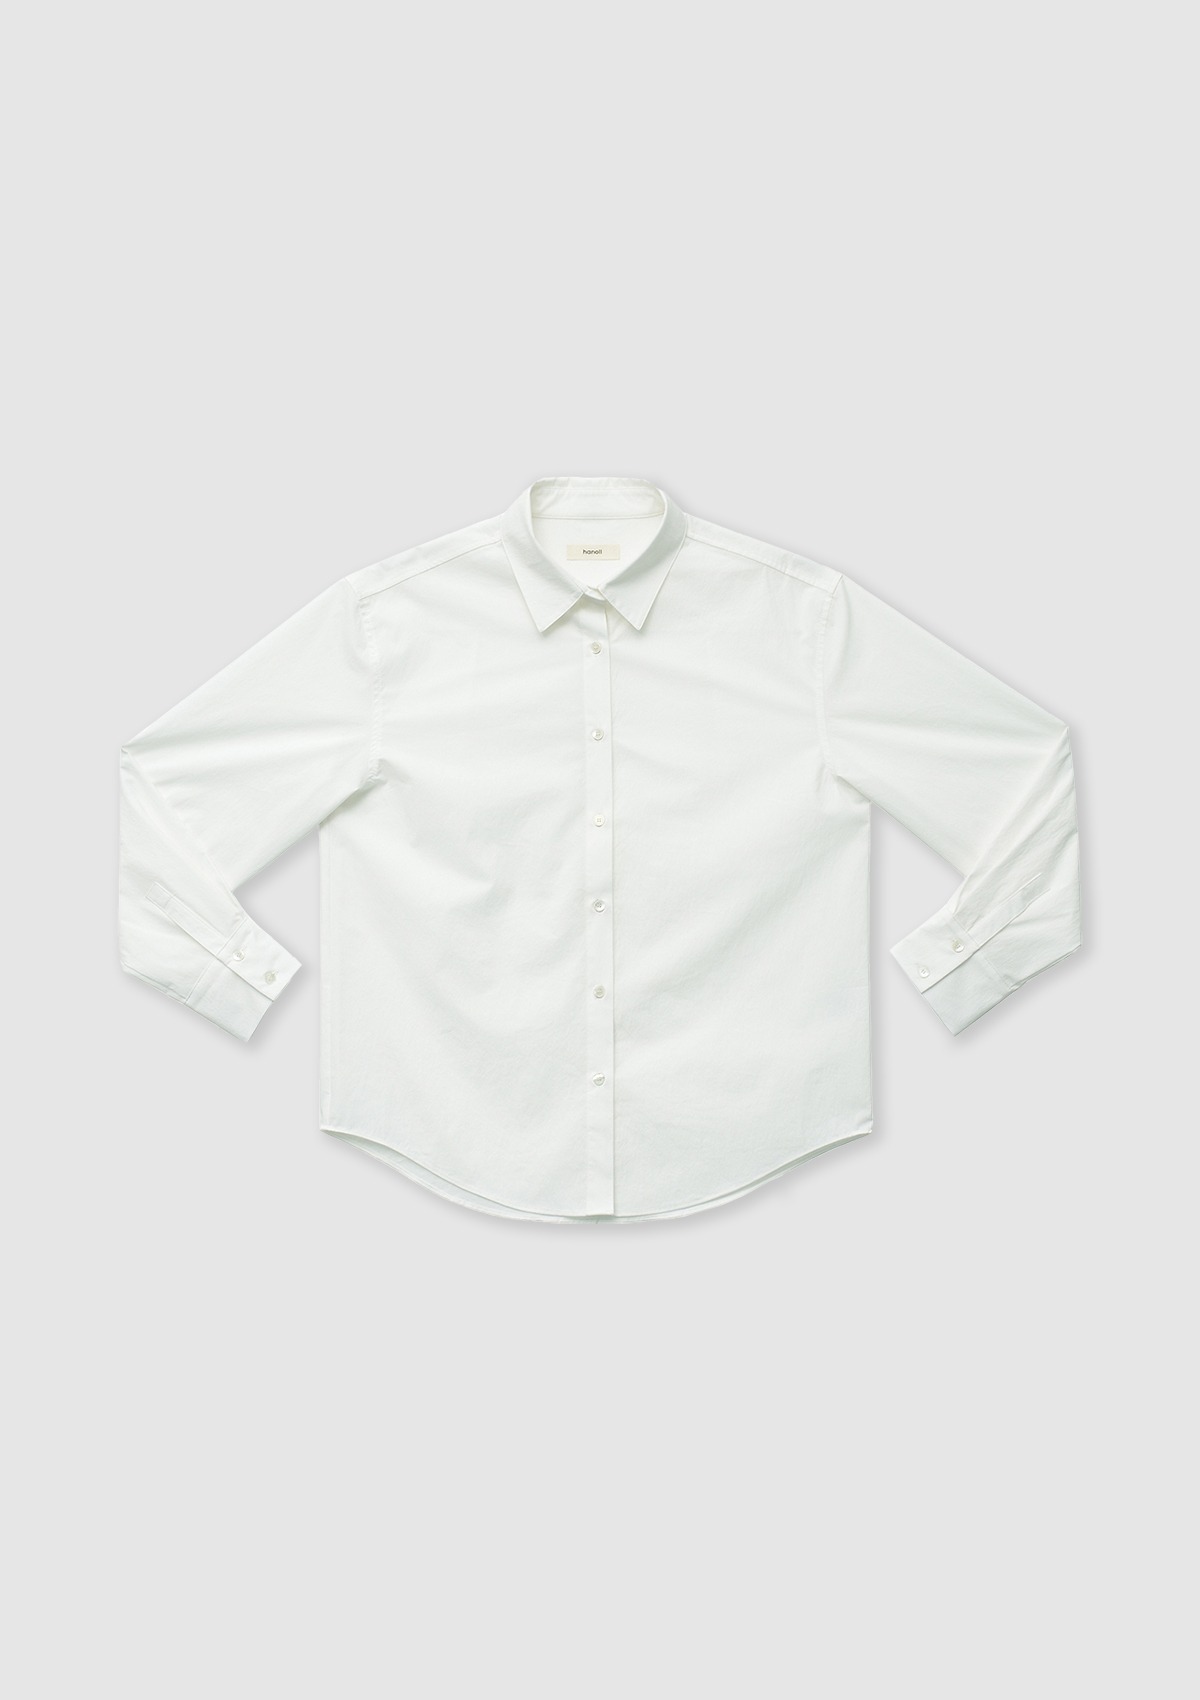 Signature Shirt (White)